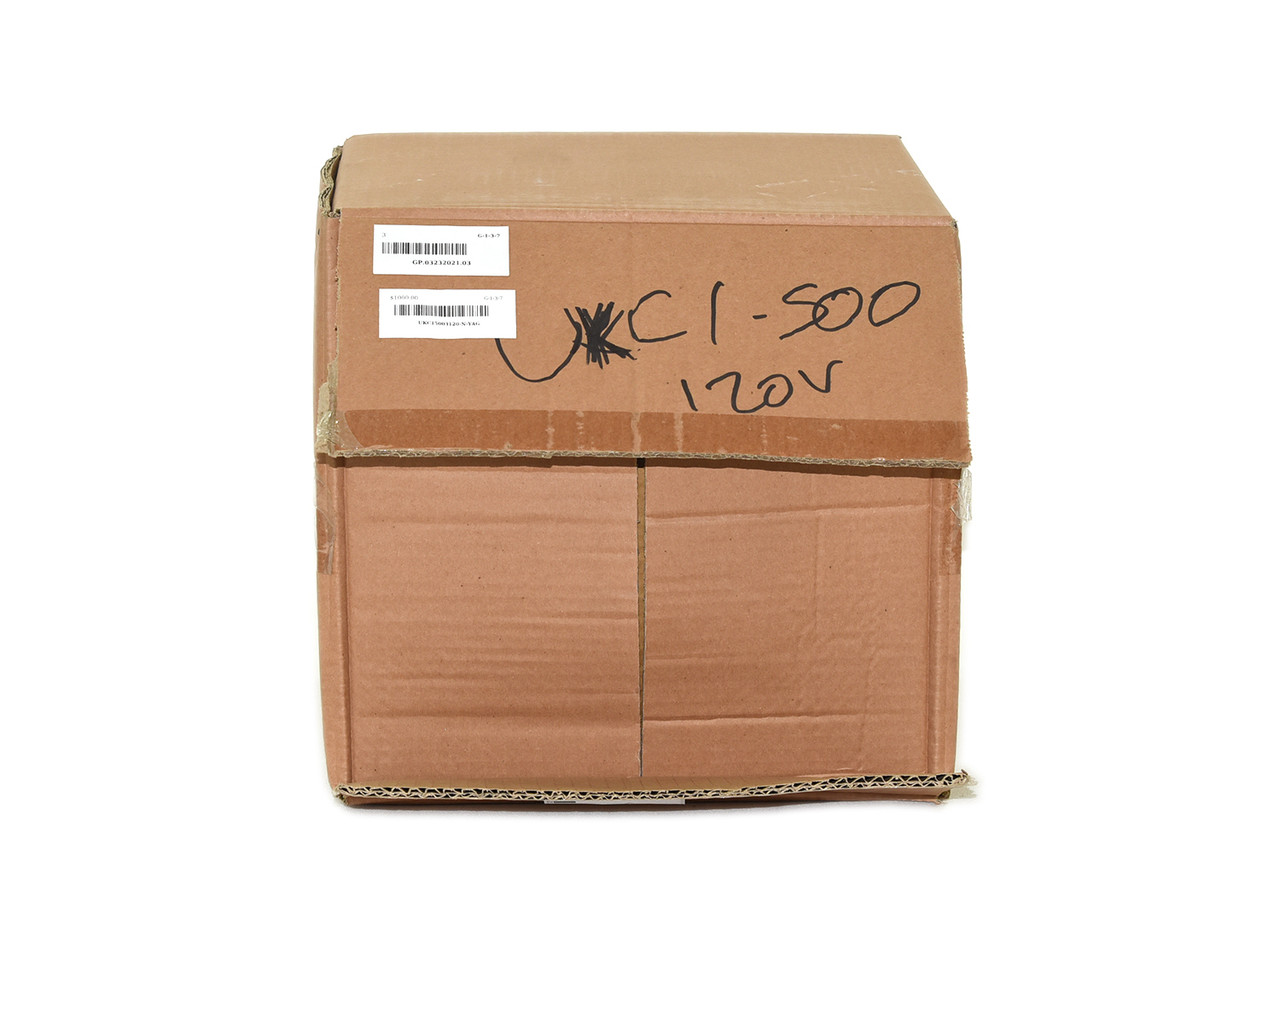 Kripal UKC1-500-3-120 Contactor 500A 600V 3P 120 V Coil